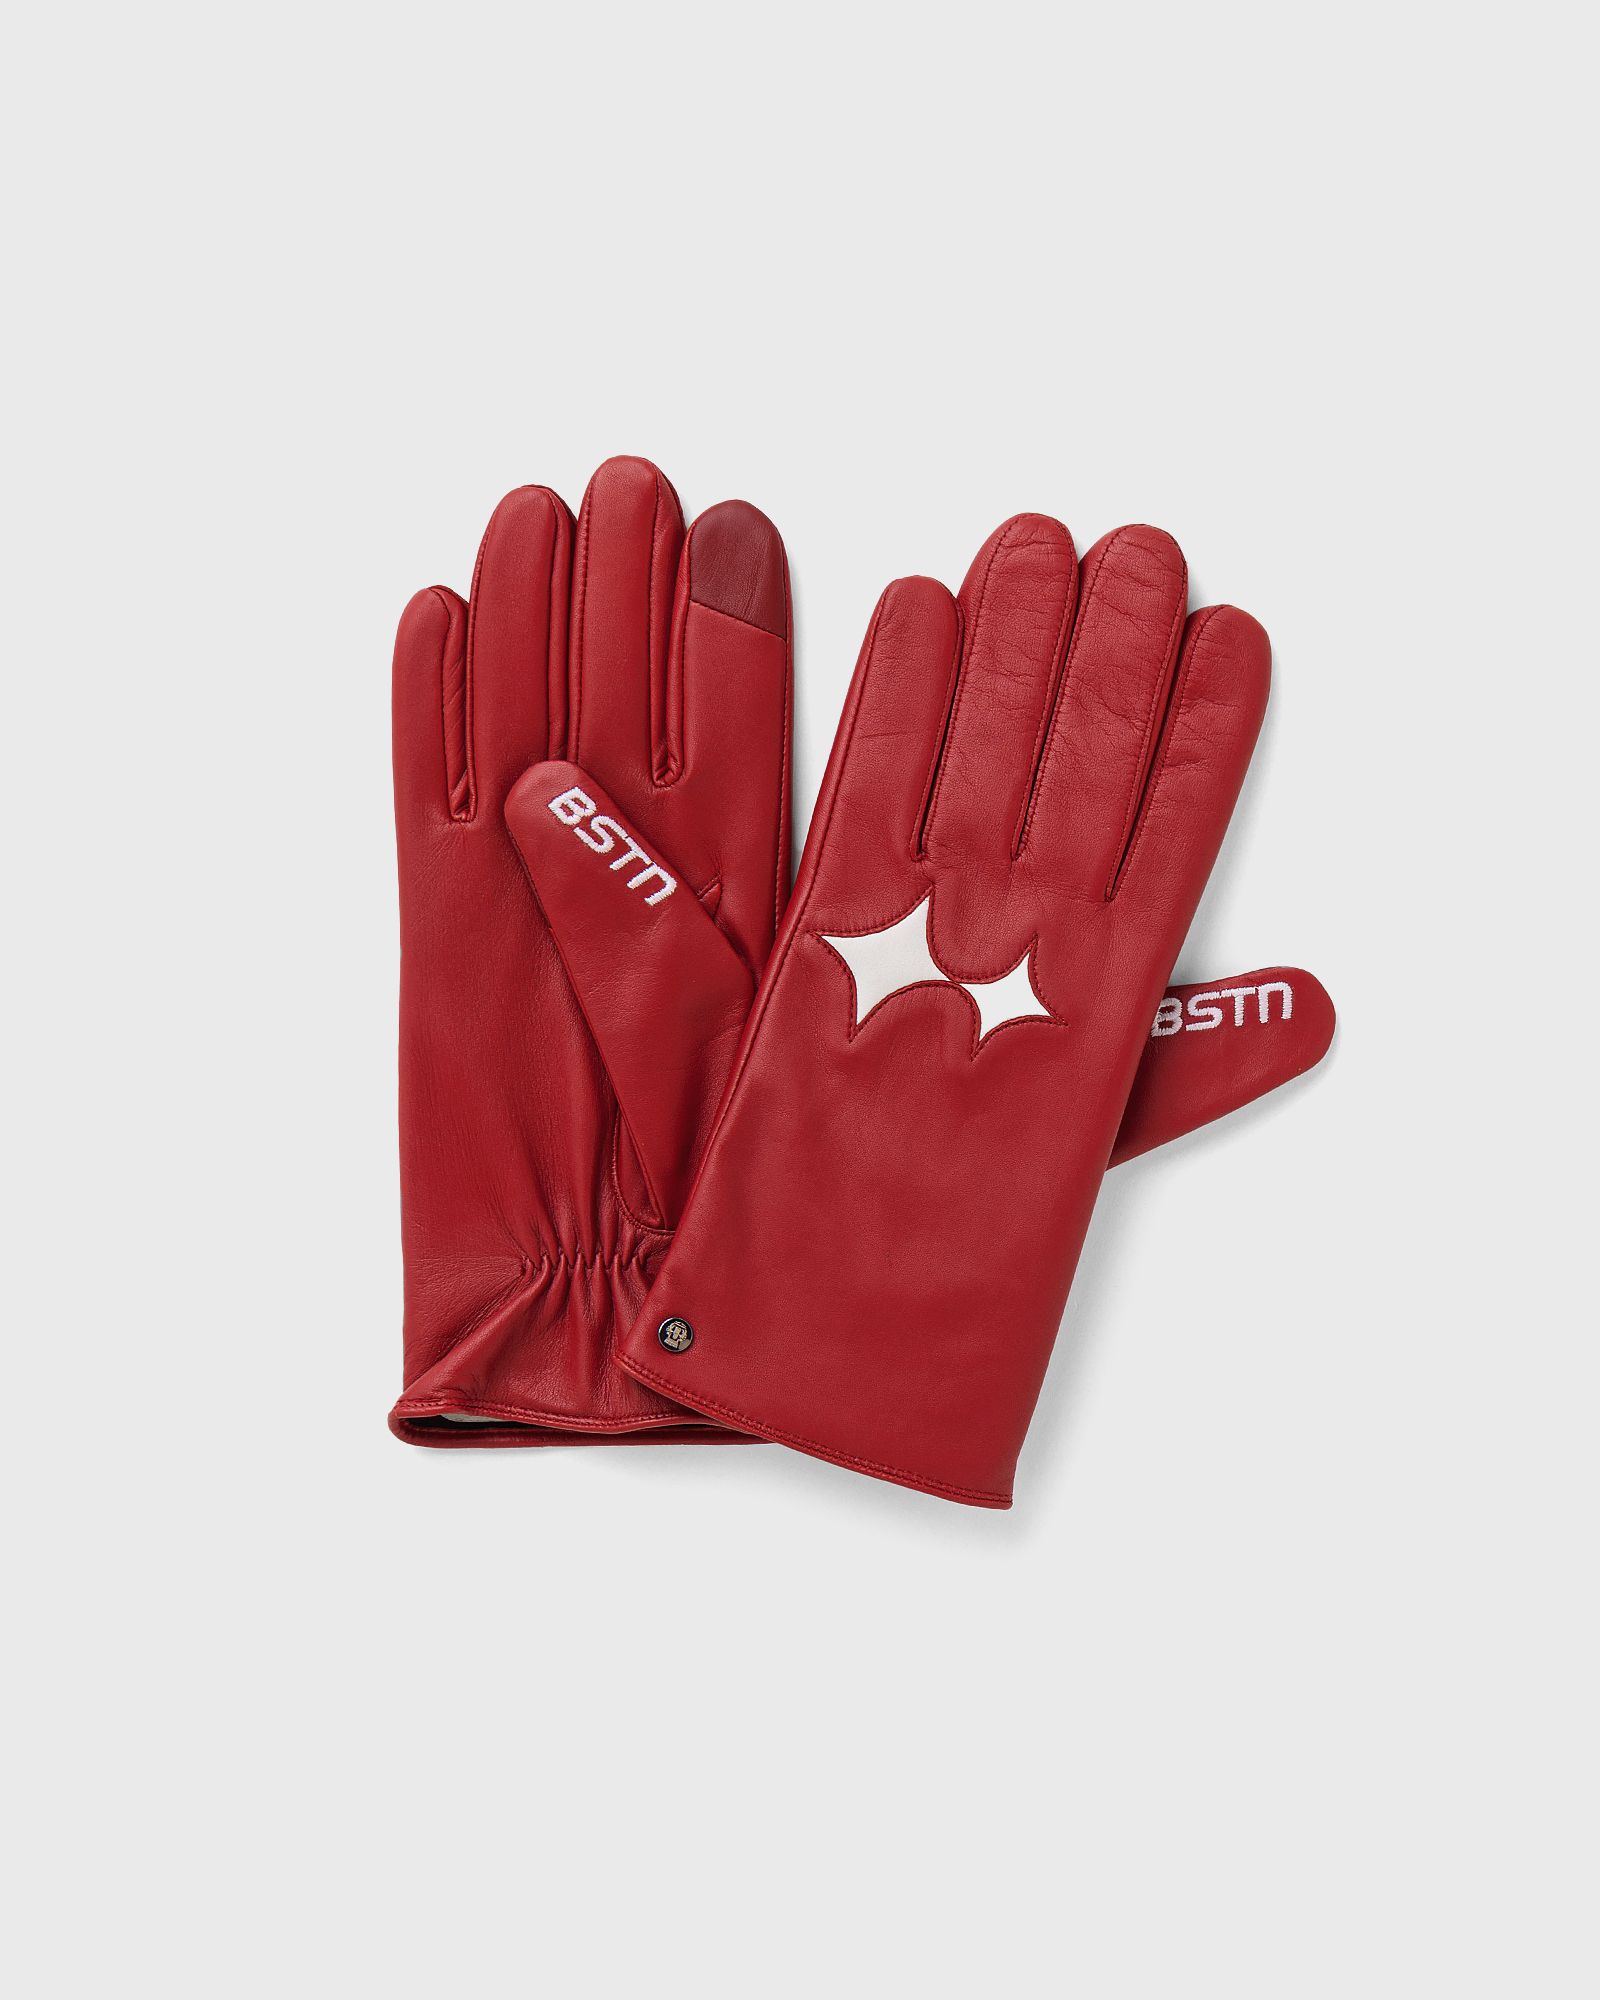 BSTN Brand - roeckl x  touch gloves wmns men gloves red in größe:7